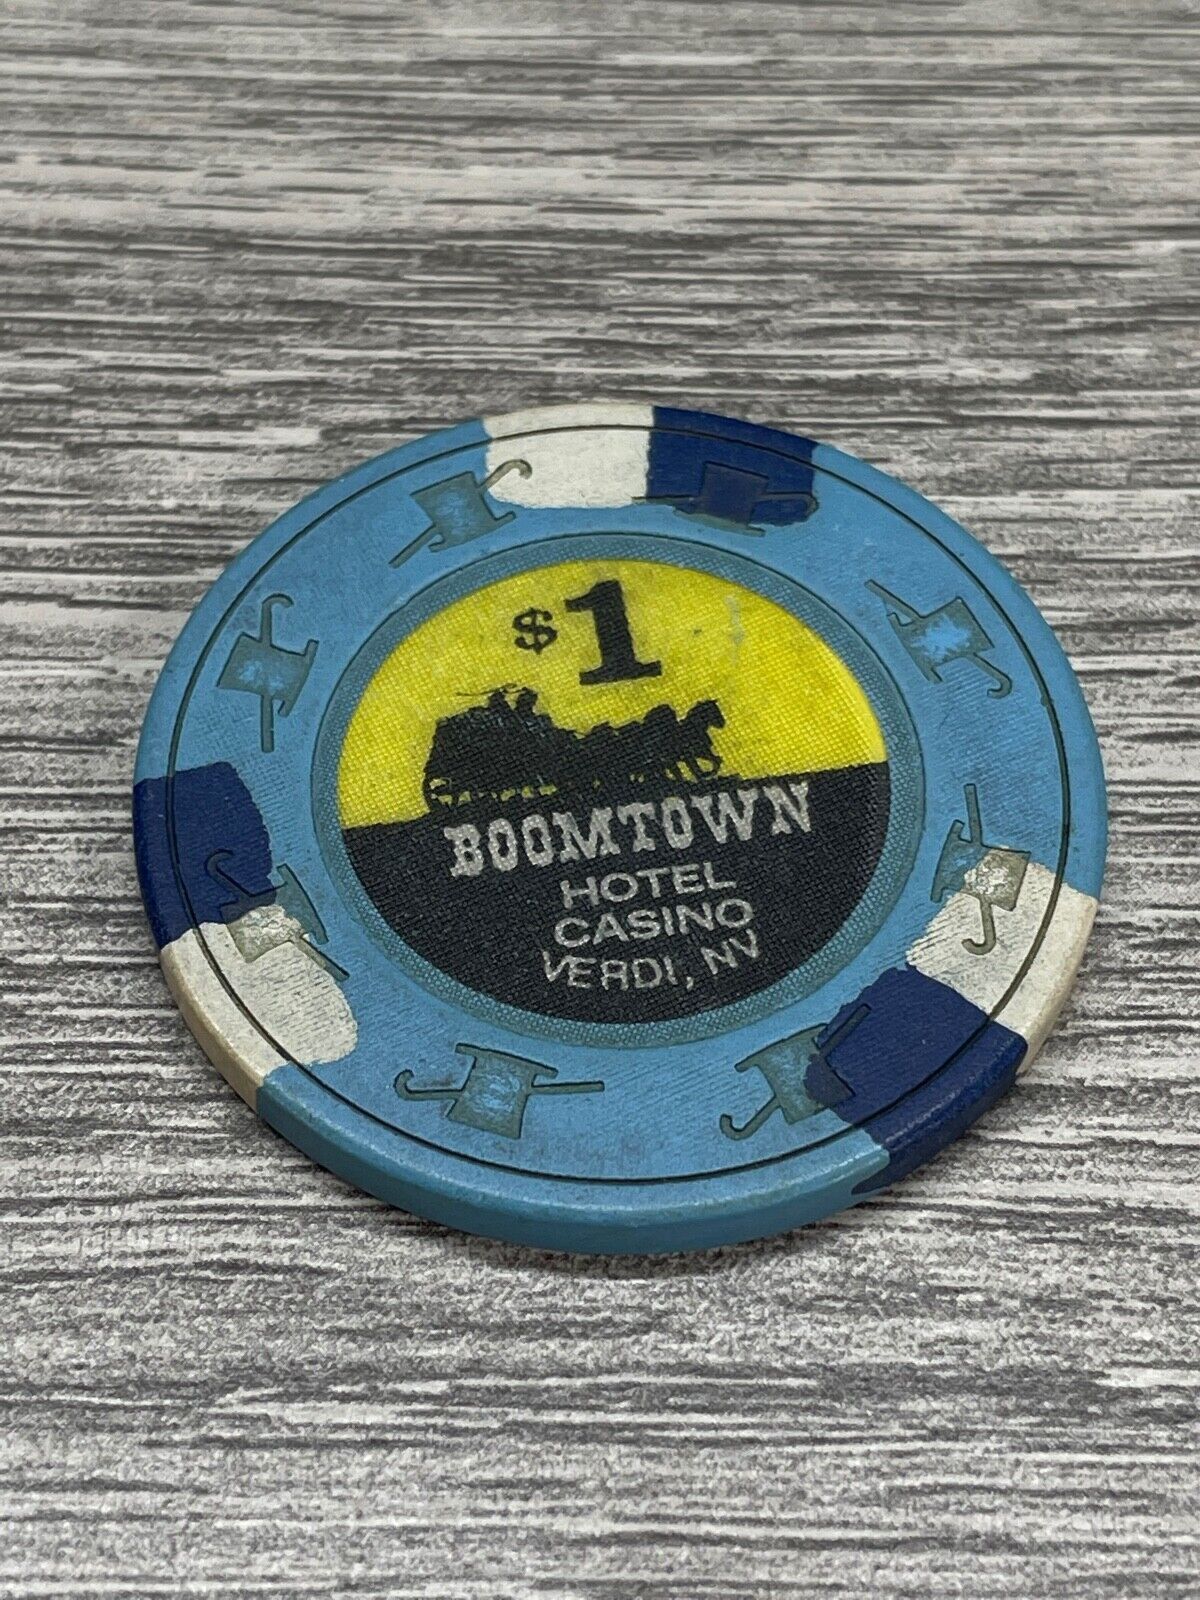 Boomtown Hotel Casino Verdi Nevada Vintage $1 Poker Chip